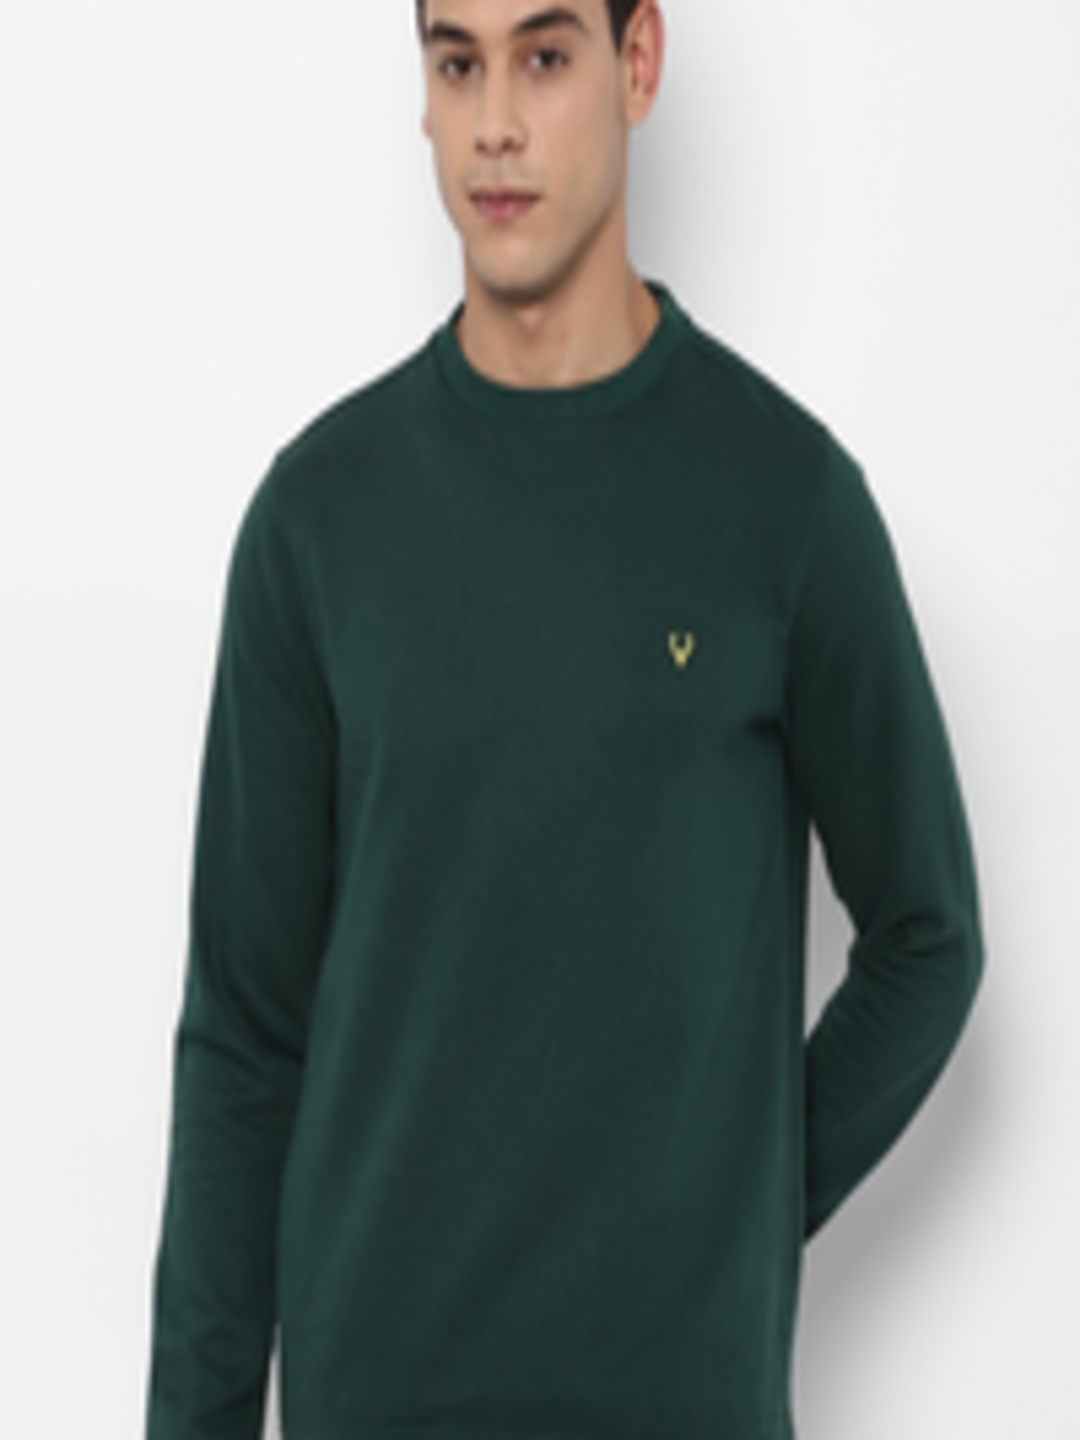 Buy Allen Solly Men Green Cotton Sweatshirt - Sweatshirts for Men ...